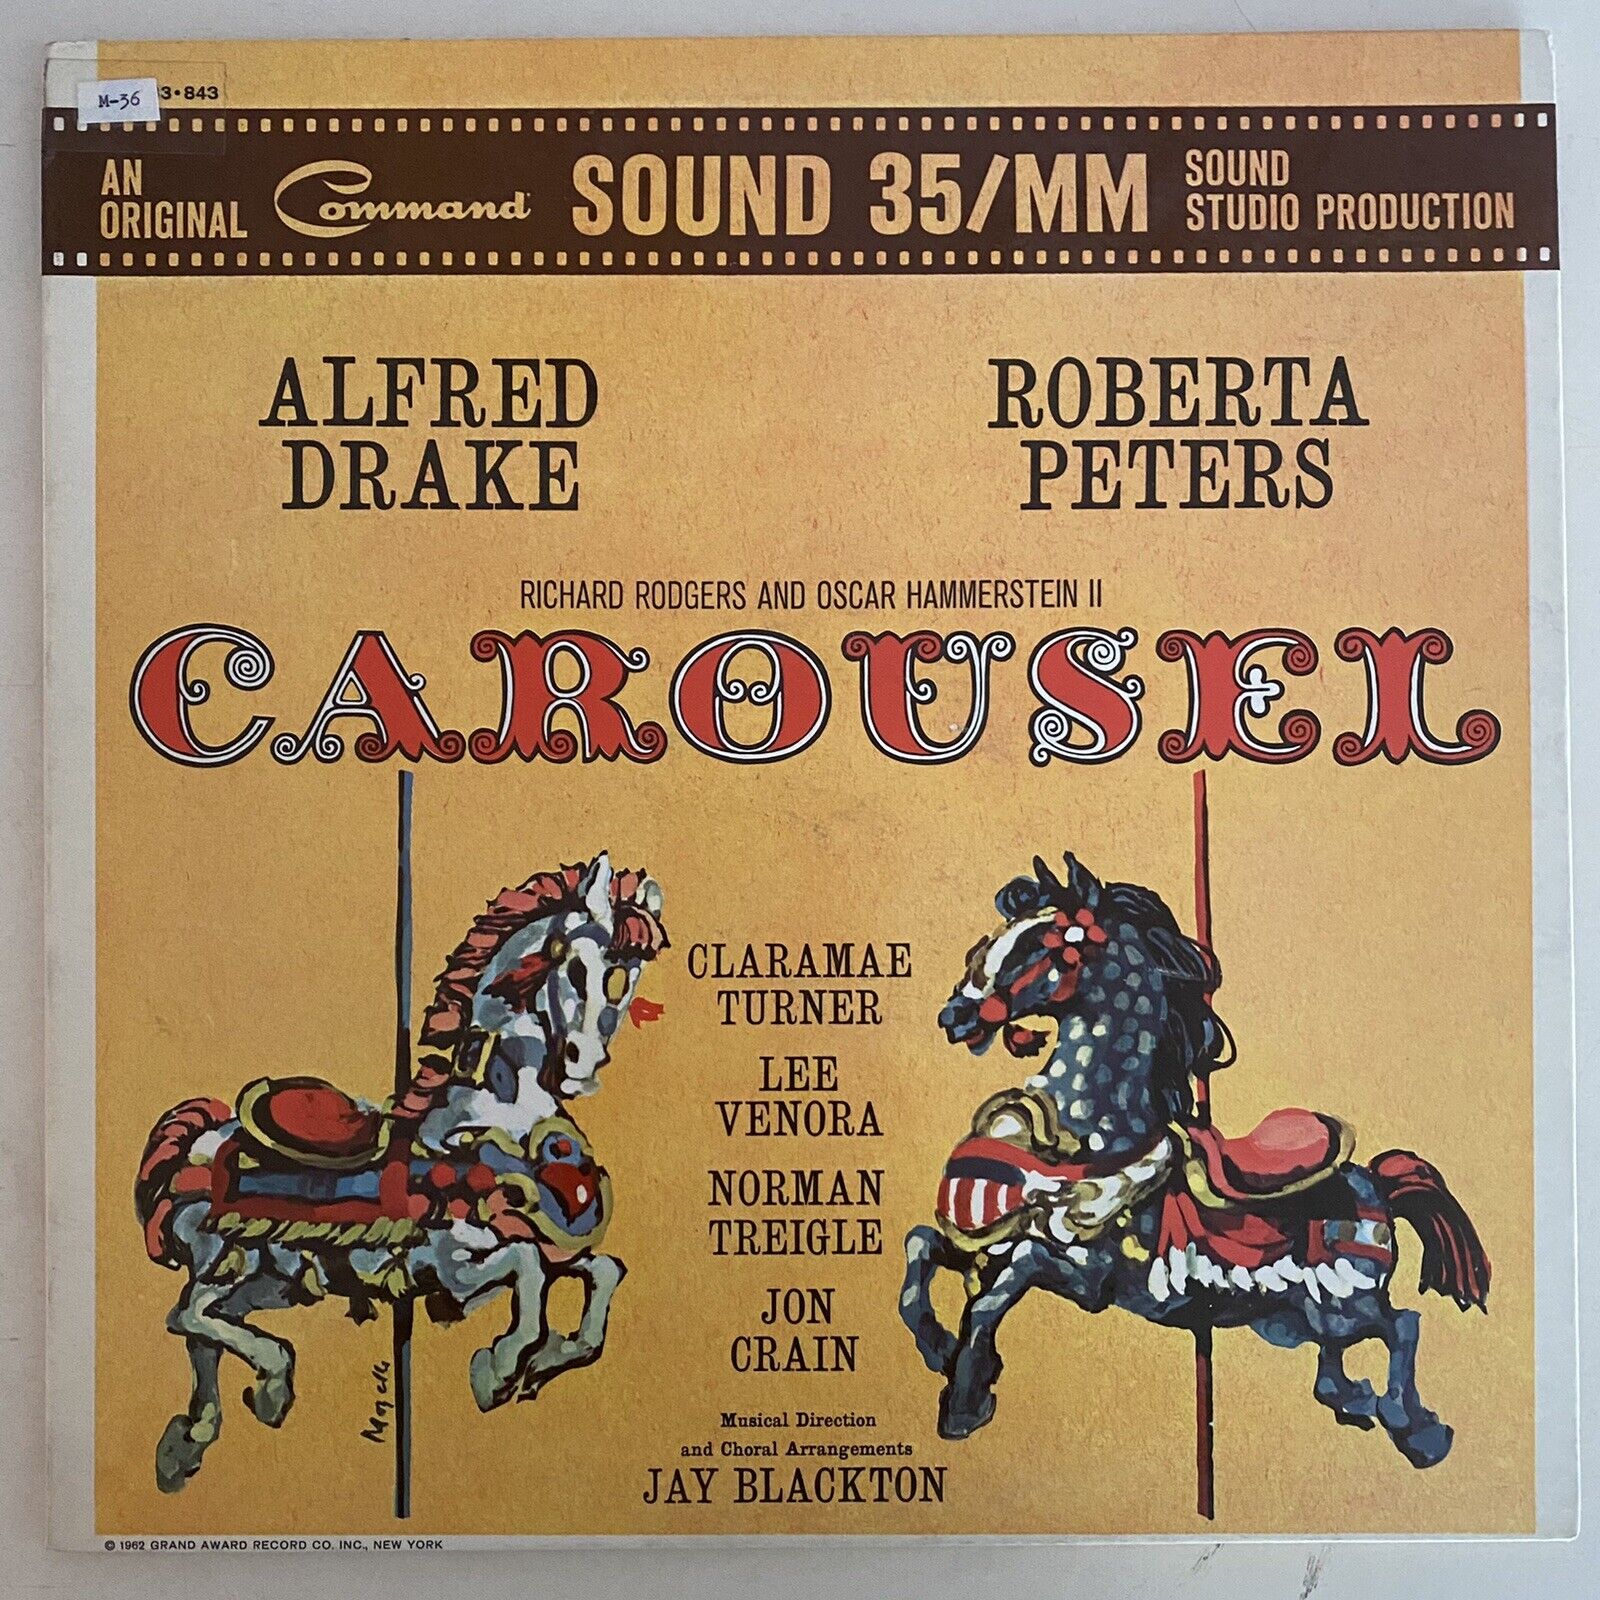 Vintage Vinyl 33 1/3 RPM LP Record Album: Carousel; 35MM Sound Studio Production